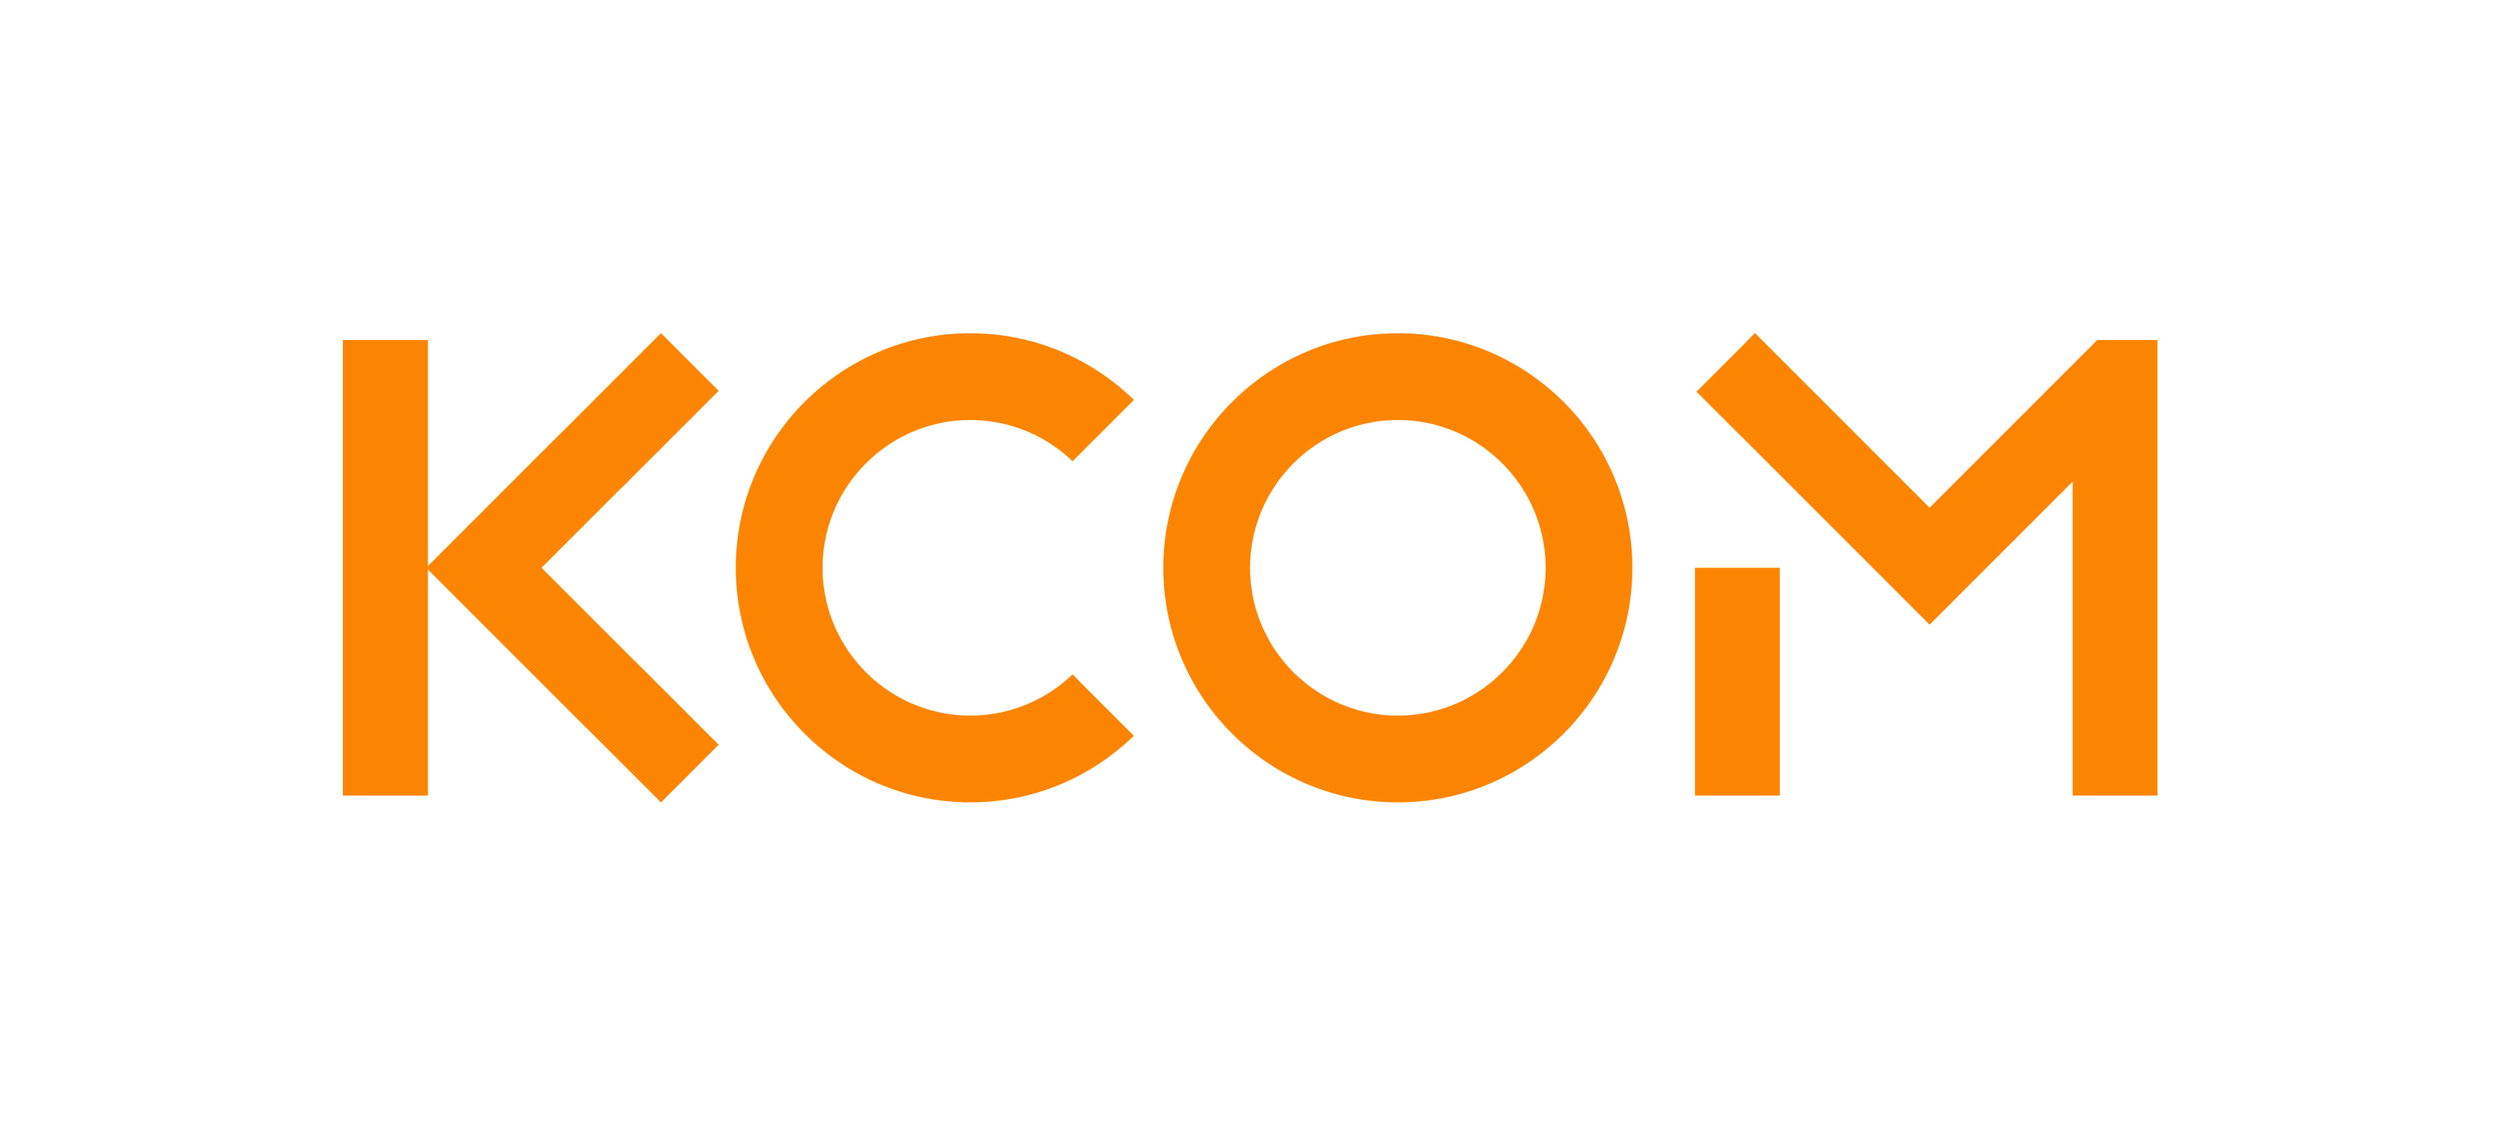 KCOM_Logo_Orange_RGB.jpg